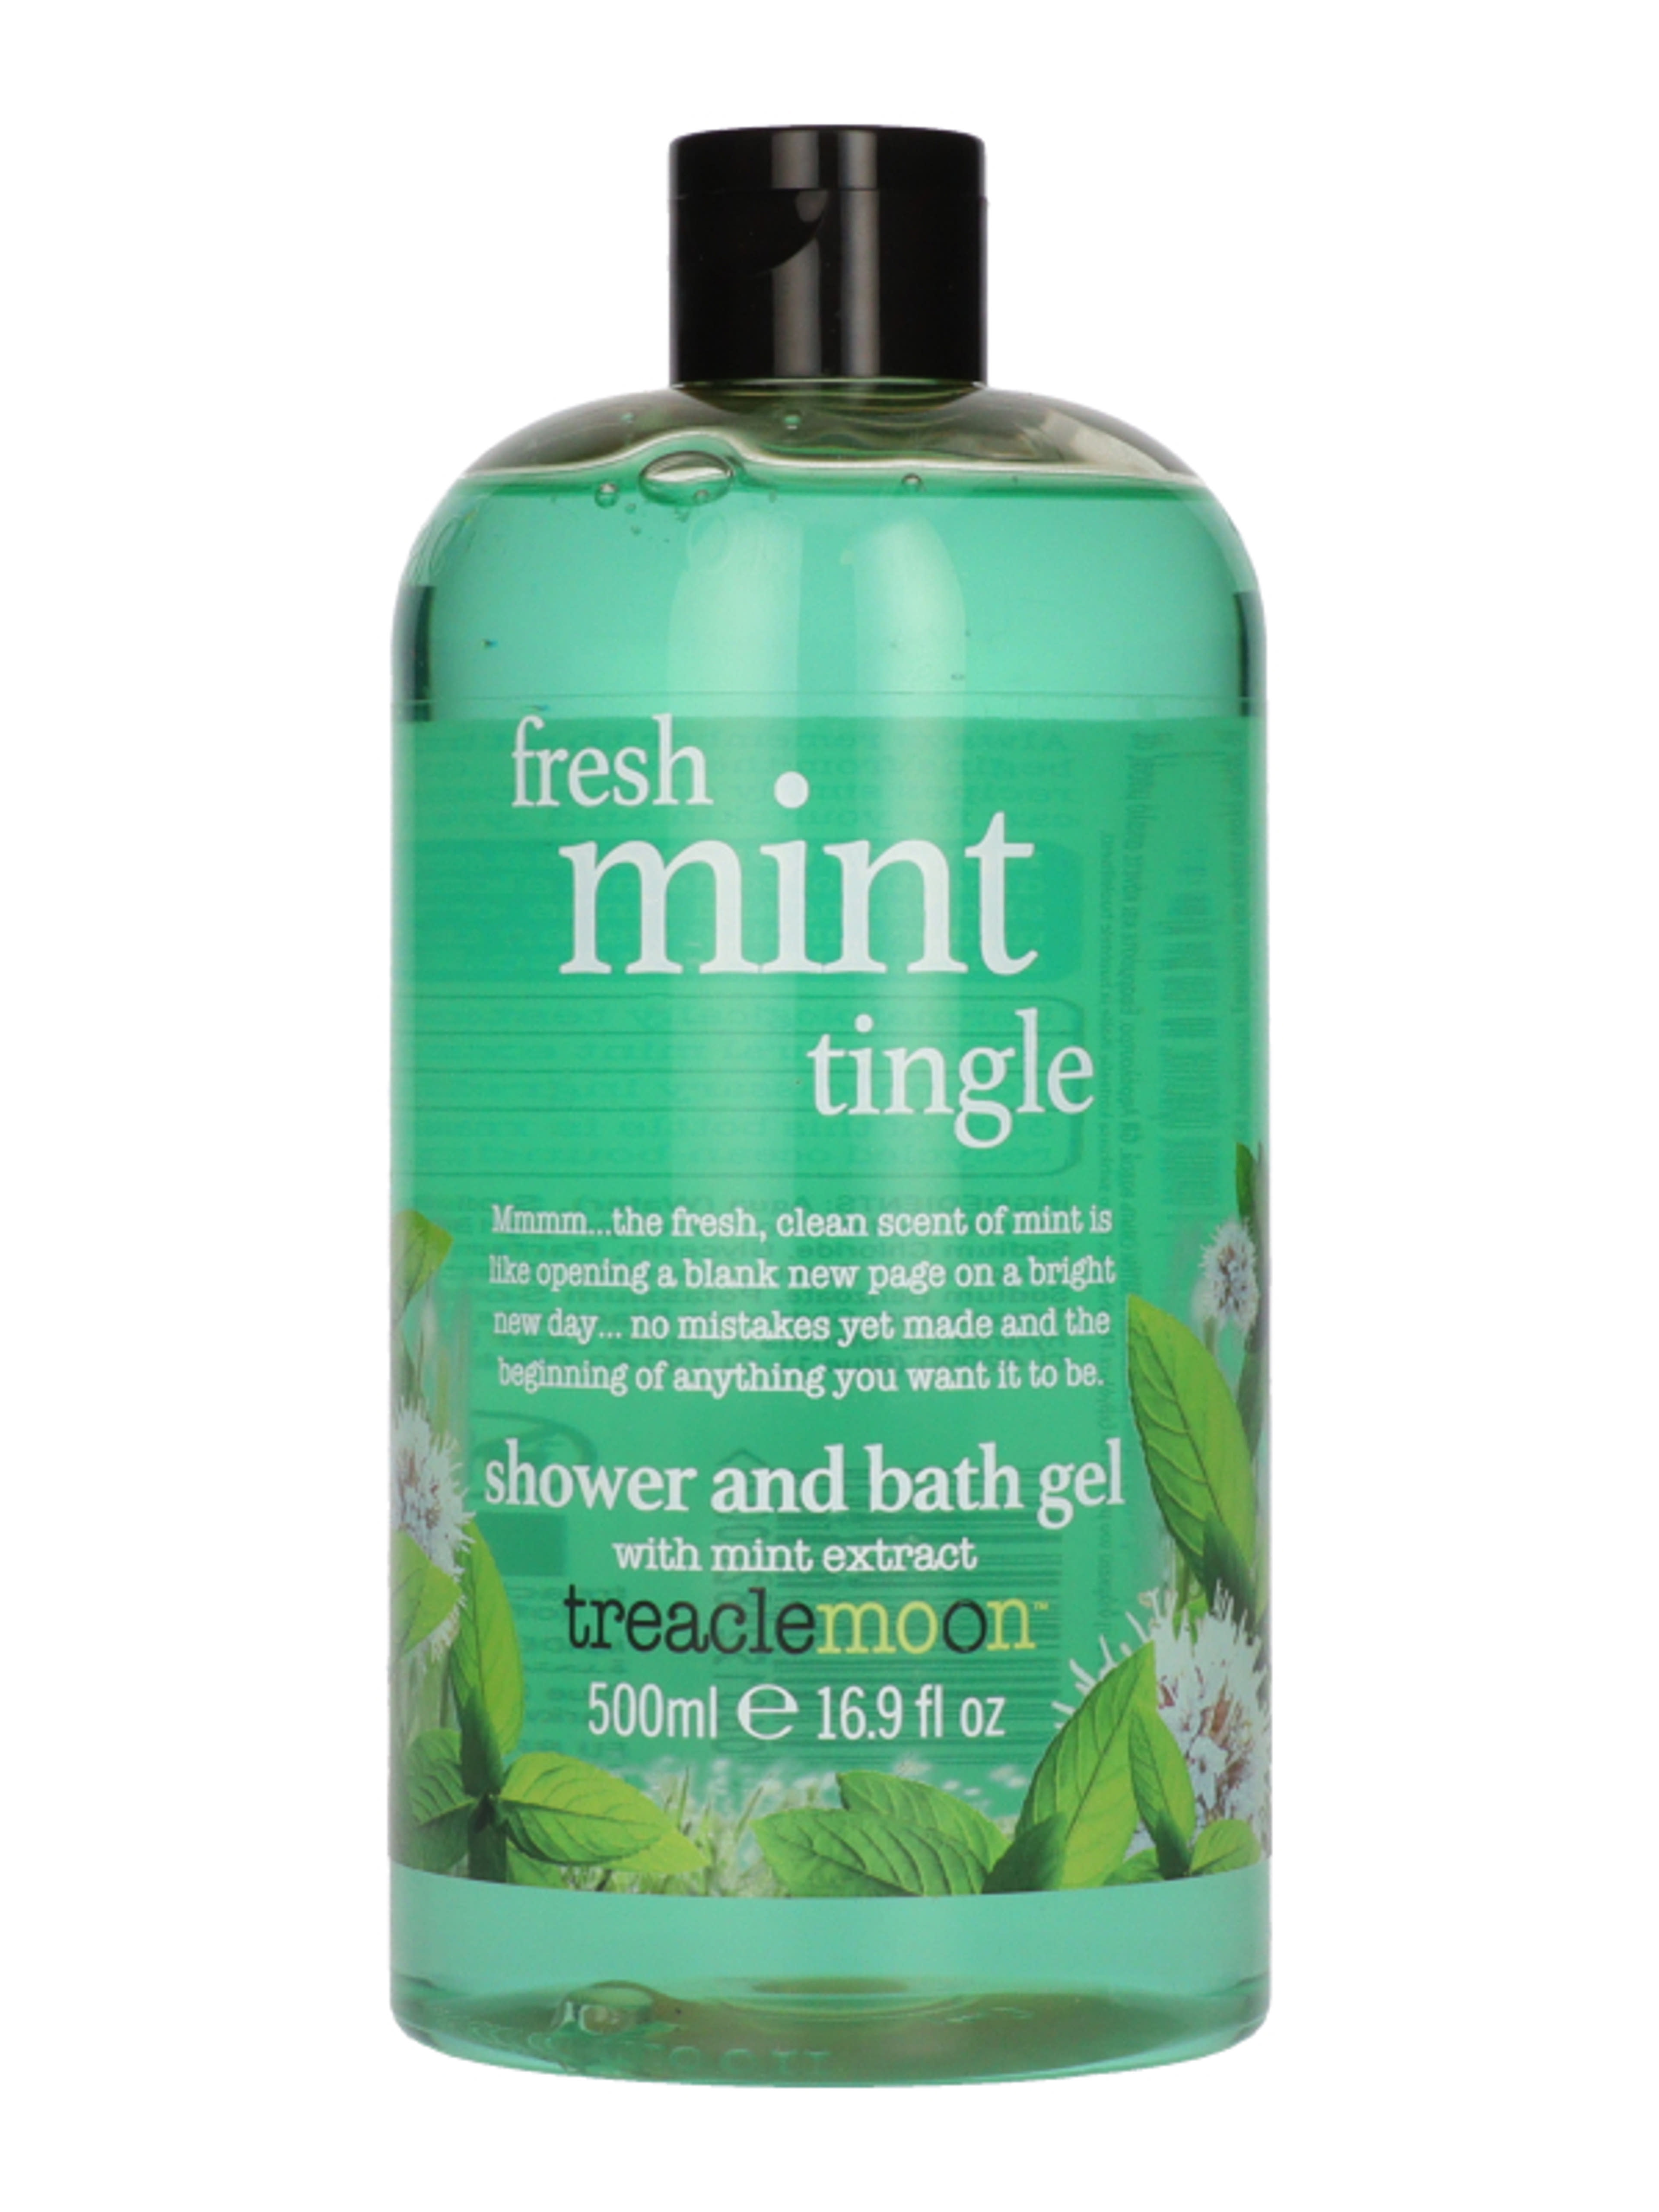 Treaclemoon Fresh Mint Tingle tusfürdő - 500 g